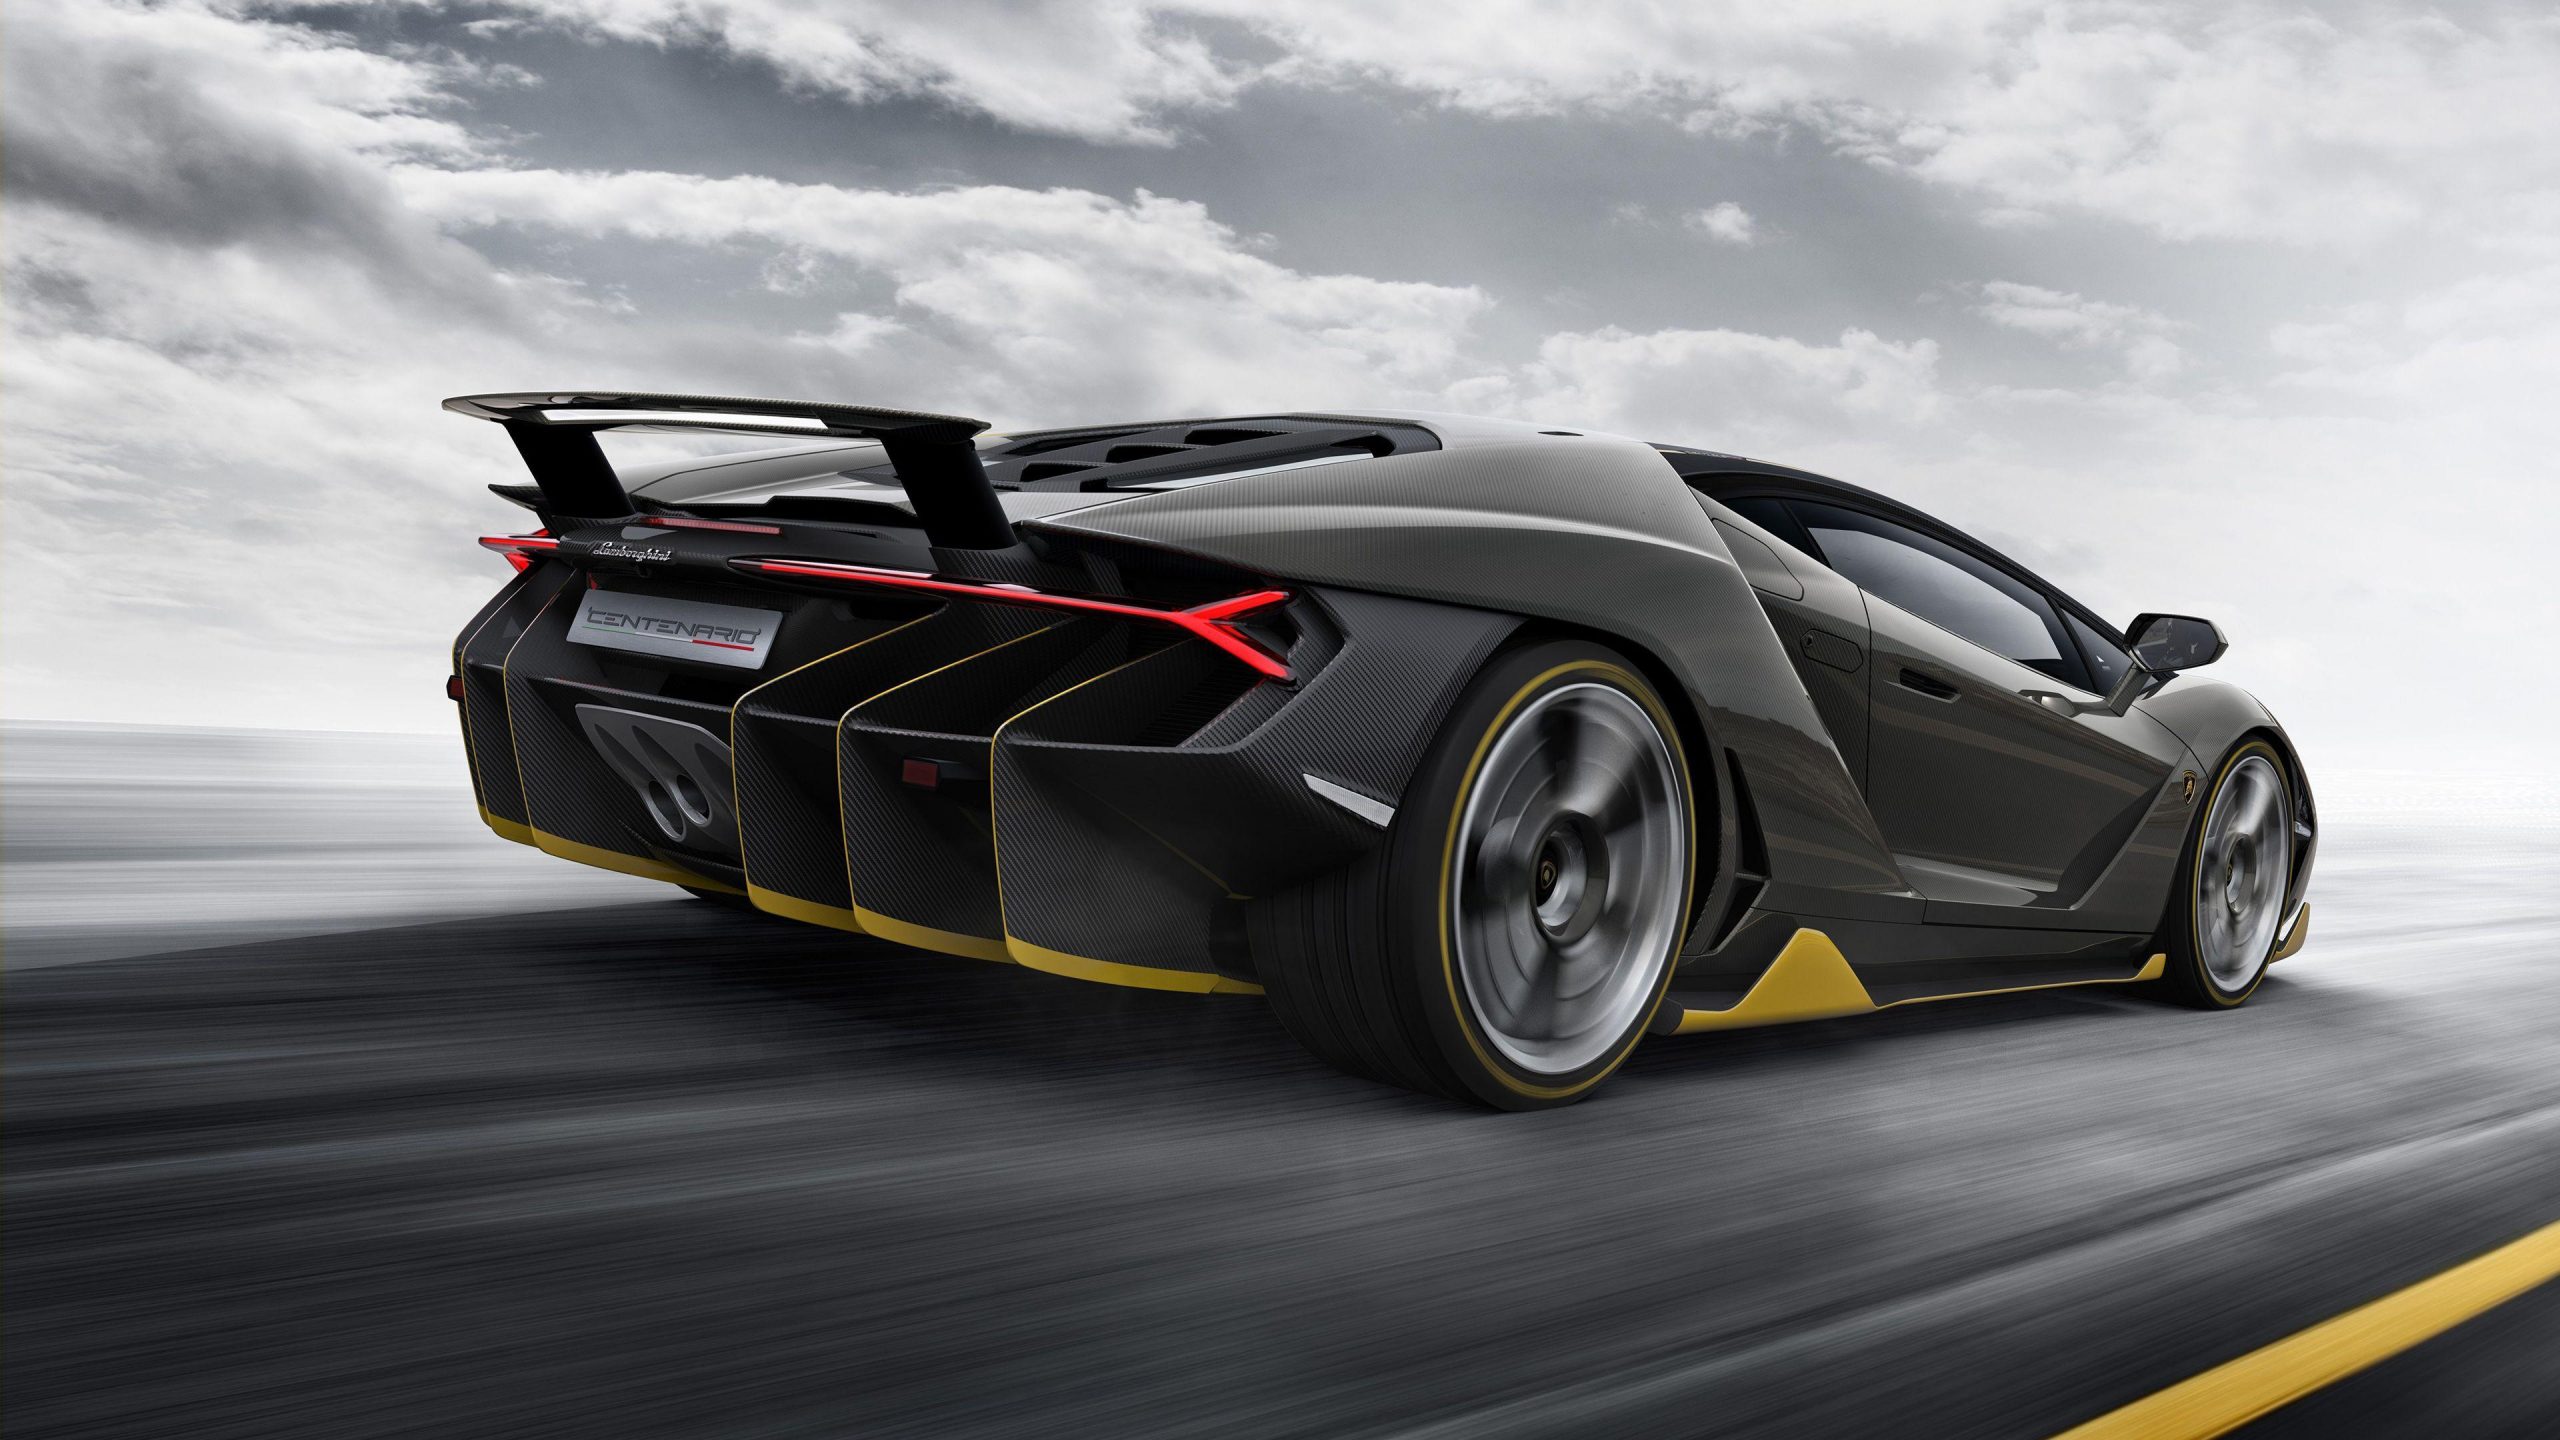 Lamborghini Centenario design